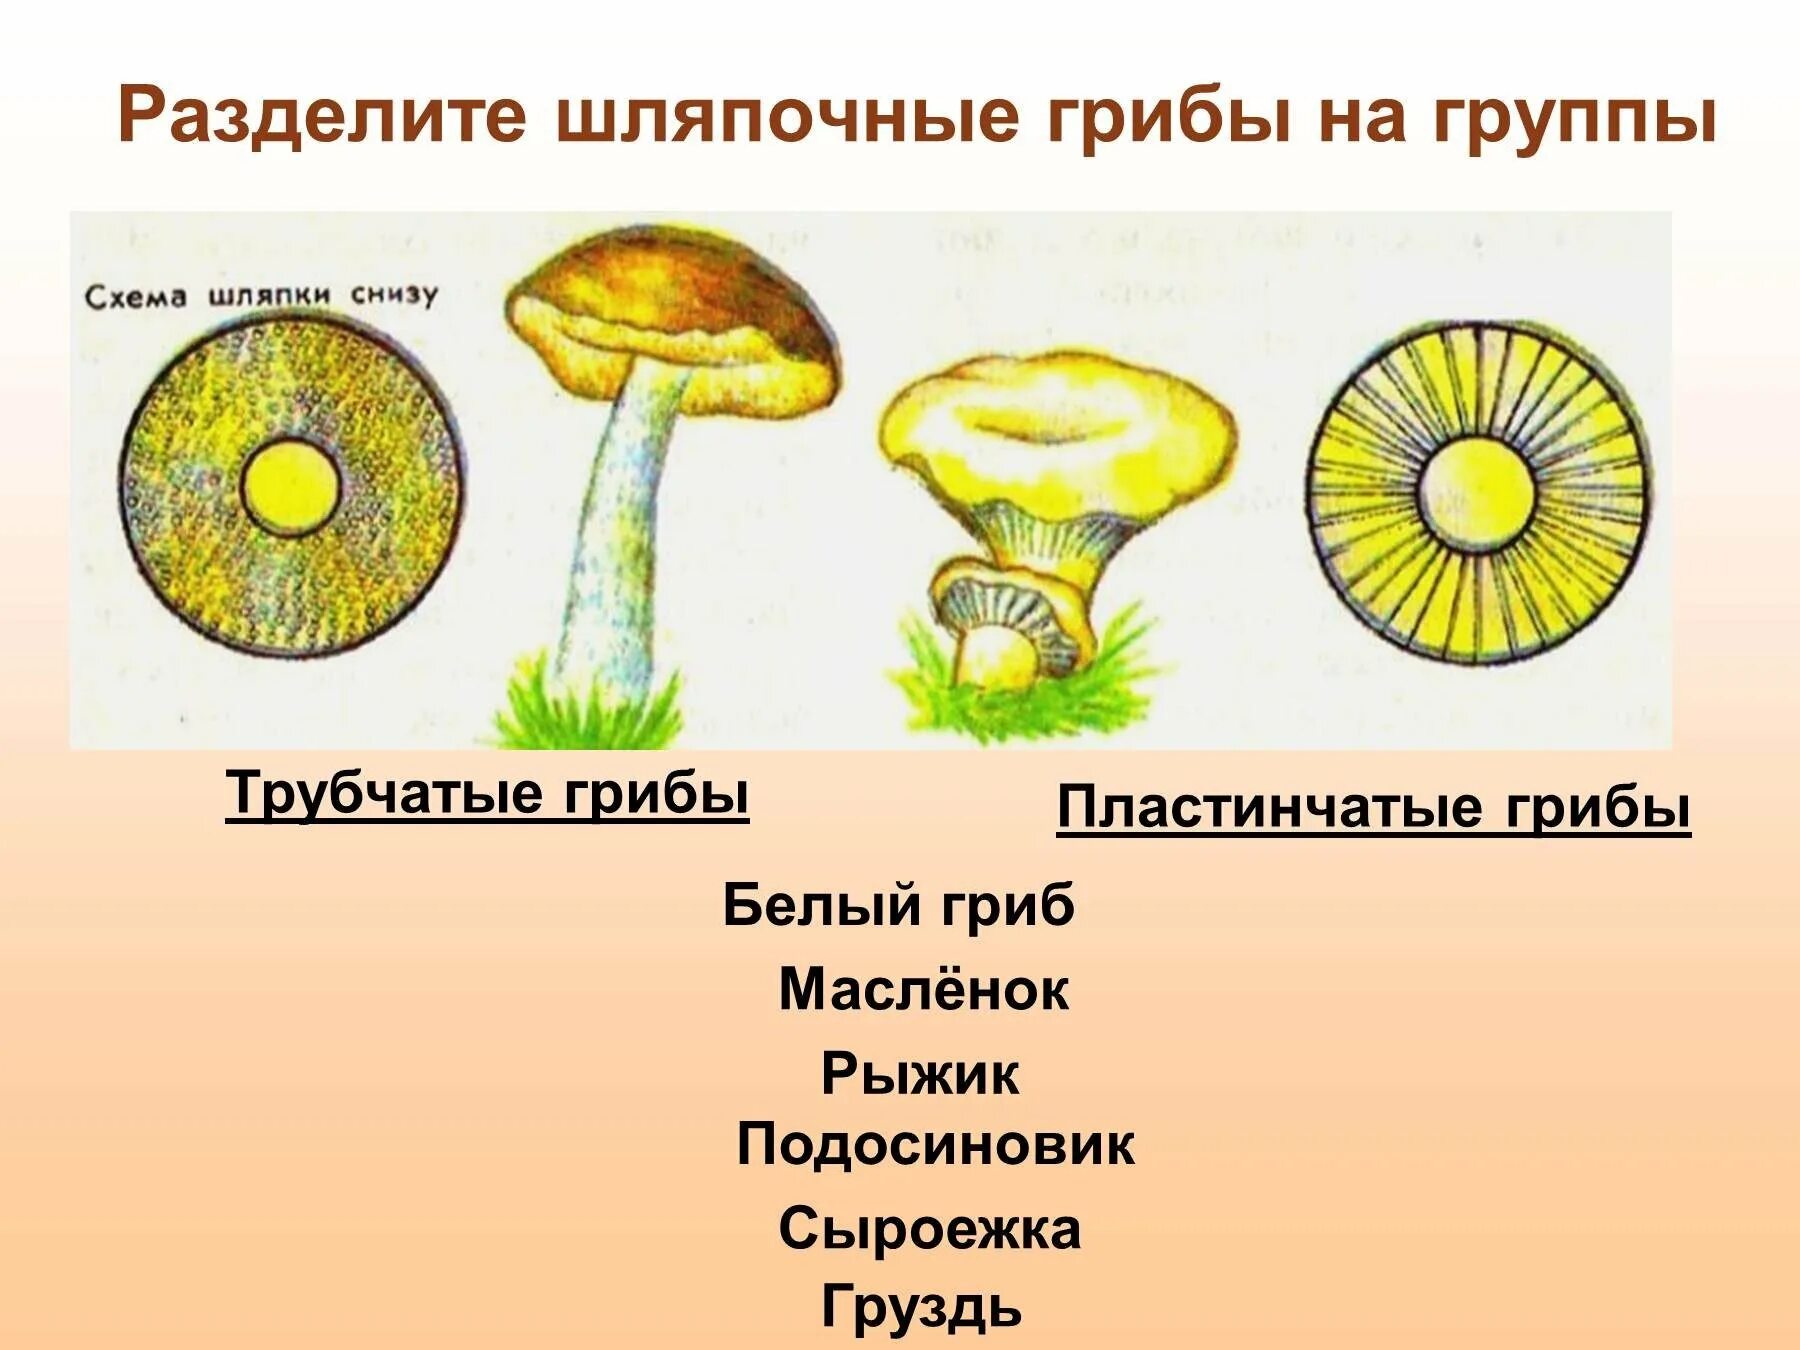 Группа трубчатых грибов. Шляпочные грибы трубчатые и пластинчатые. Трубчатые Шляпочные грибы Рыжик. Трубчатые и пластинчатые грибы 5 класс биология. Трубчатые Шляпочные грибы масленок.